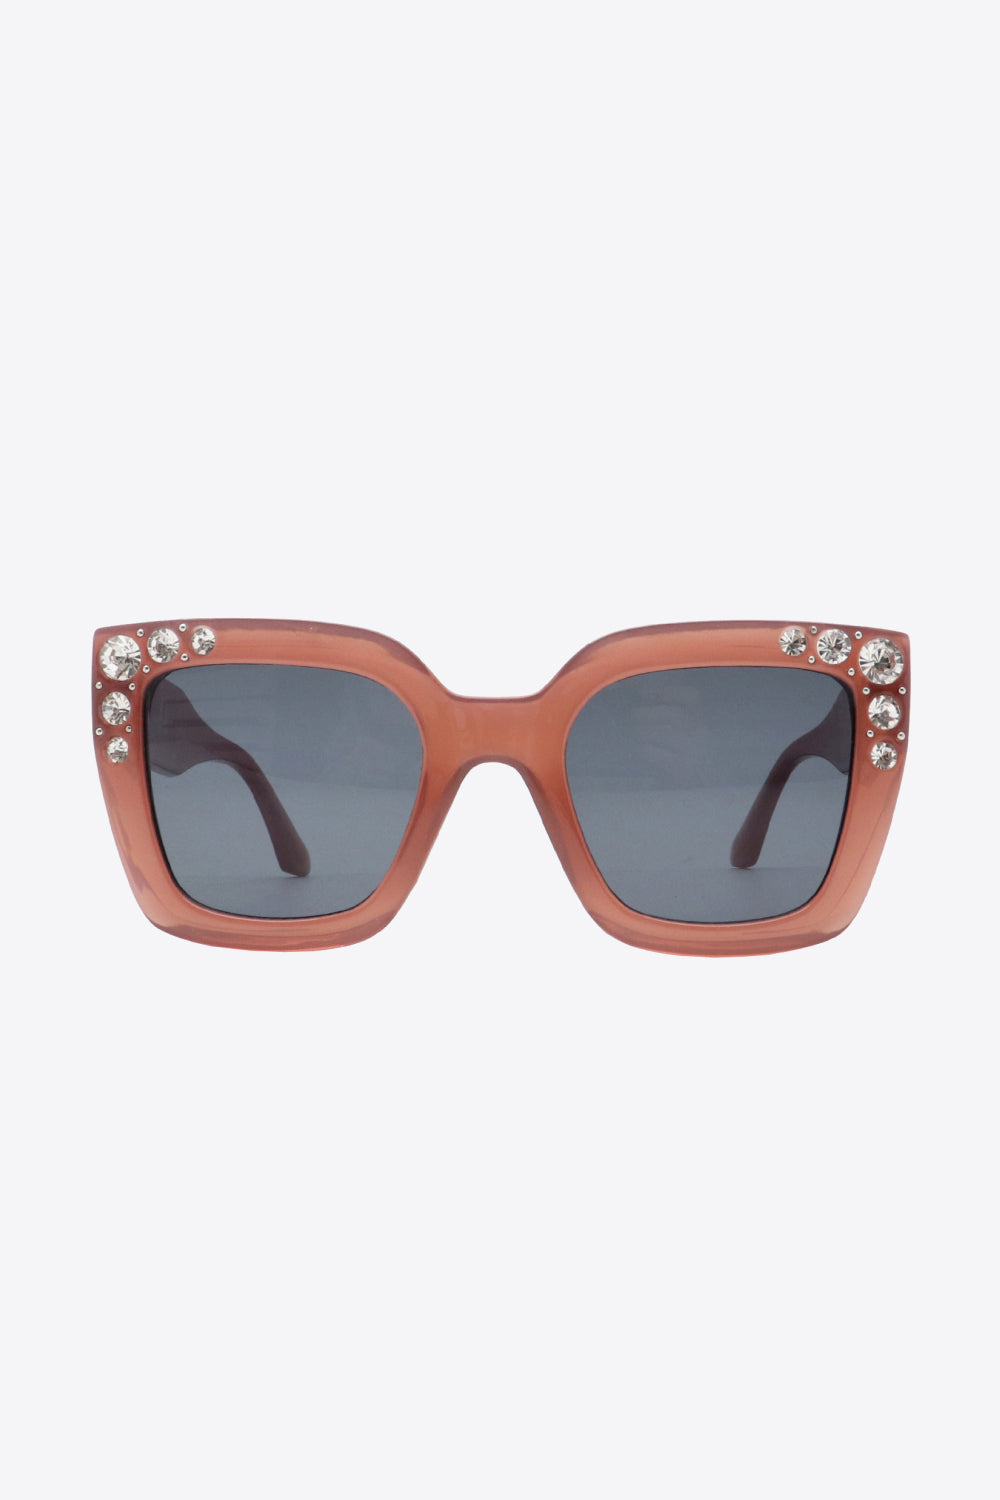 Inlaid Rhinestone Sunglasses